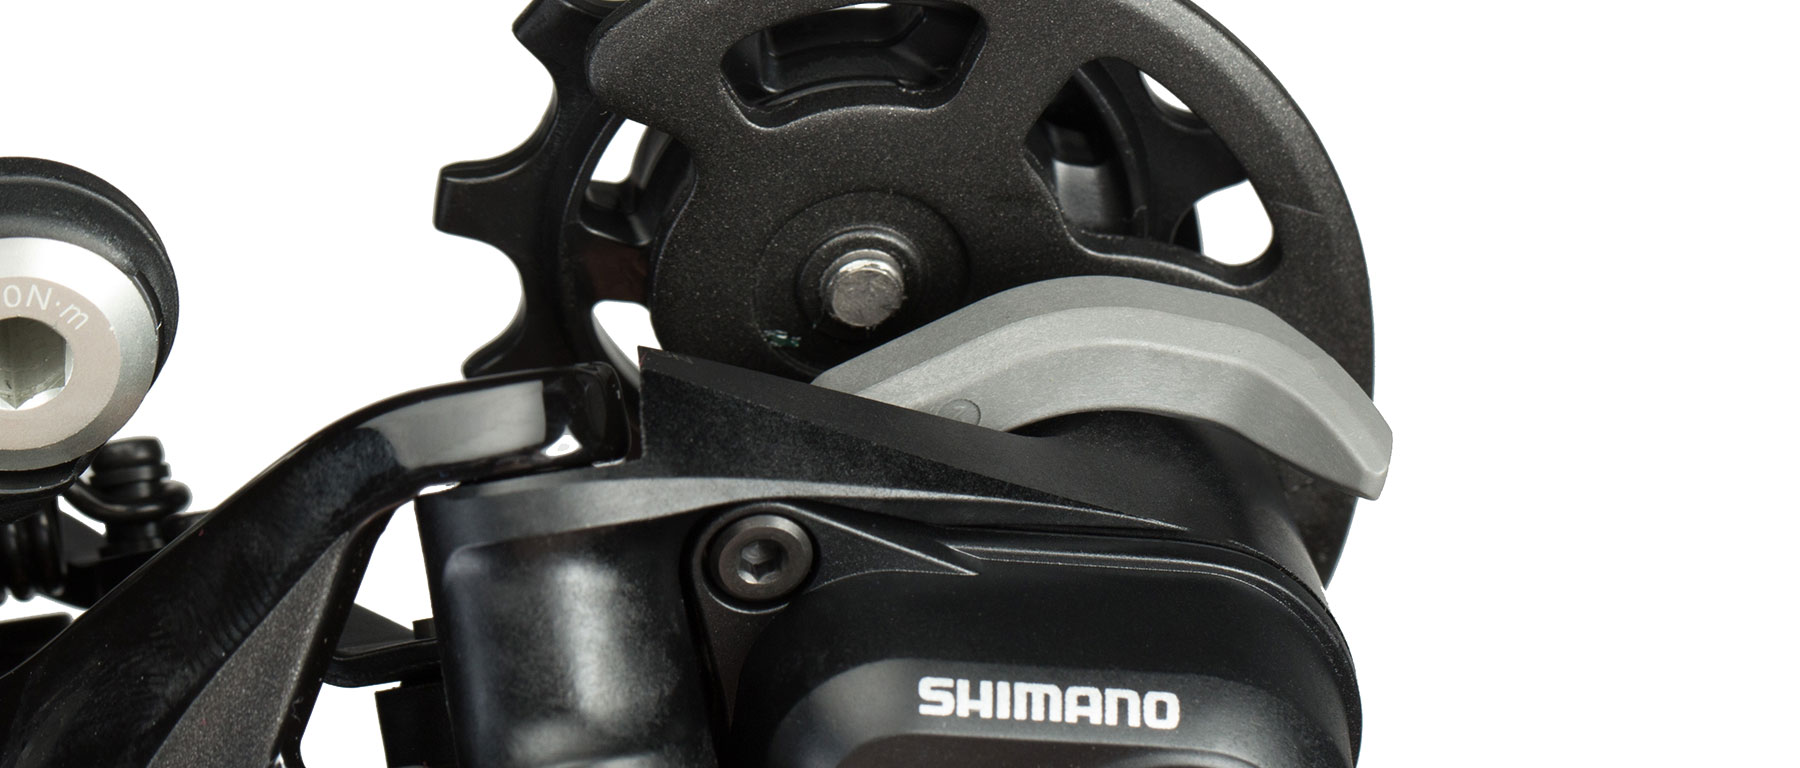 Shimano XT RD-M8050-GS Di2 11-Speed Rear Derailleur